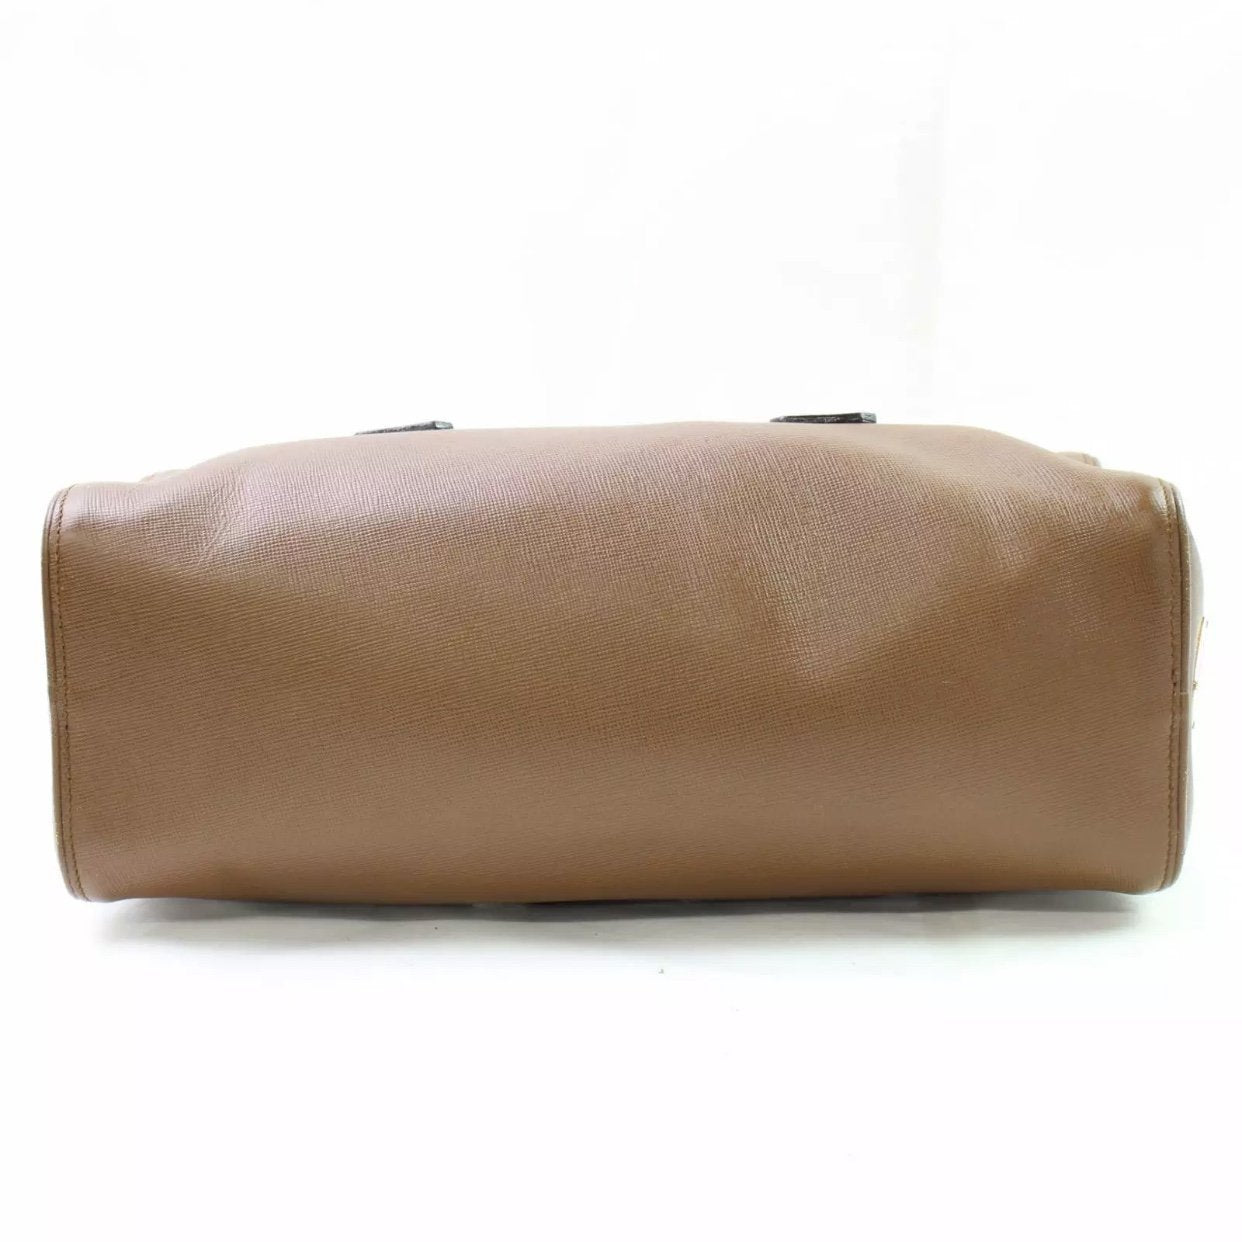 Prada Bag Authentic Prada Nylon Jewelled Boston Bag in Brown 